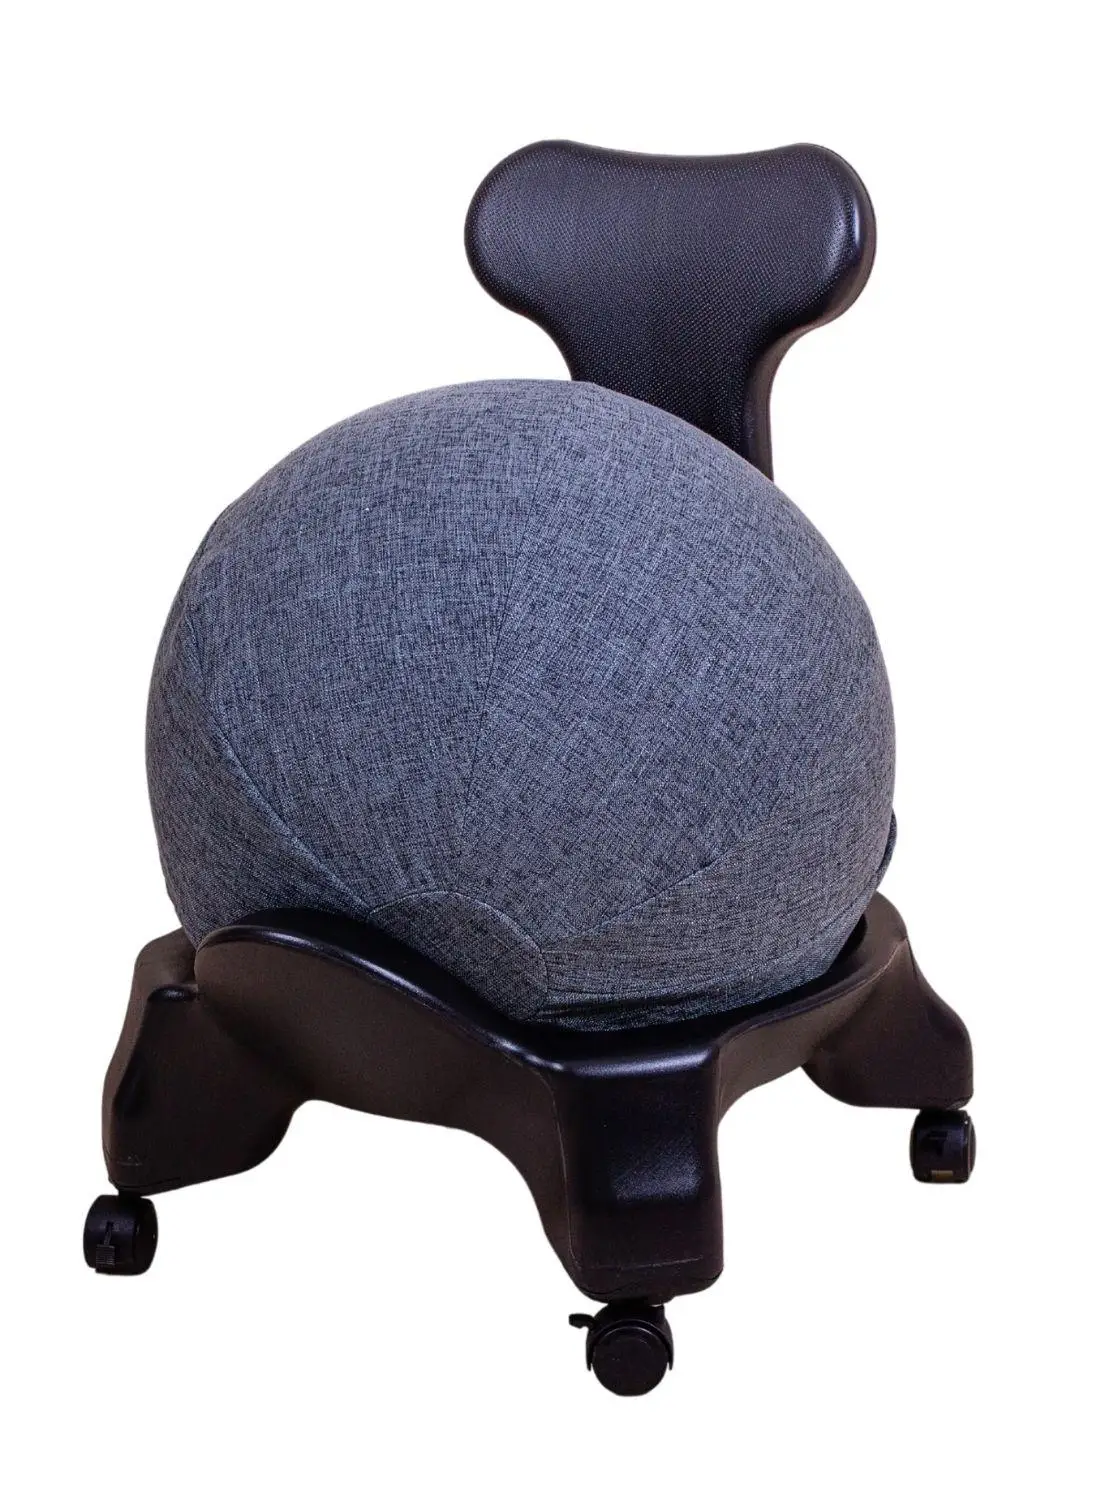 Правильный ортопедический стул для осанки в офис или домой Classic Balance Ball (с чехлом